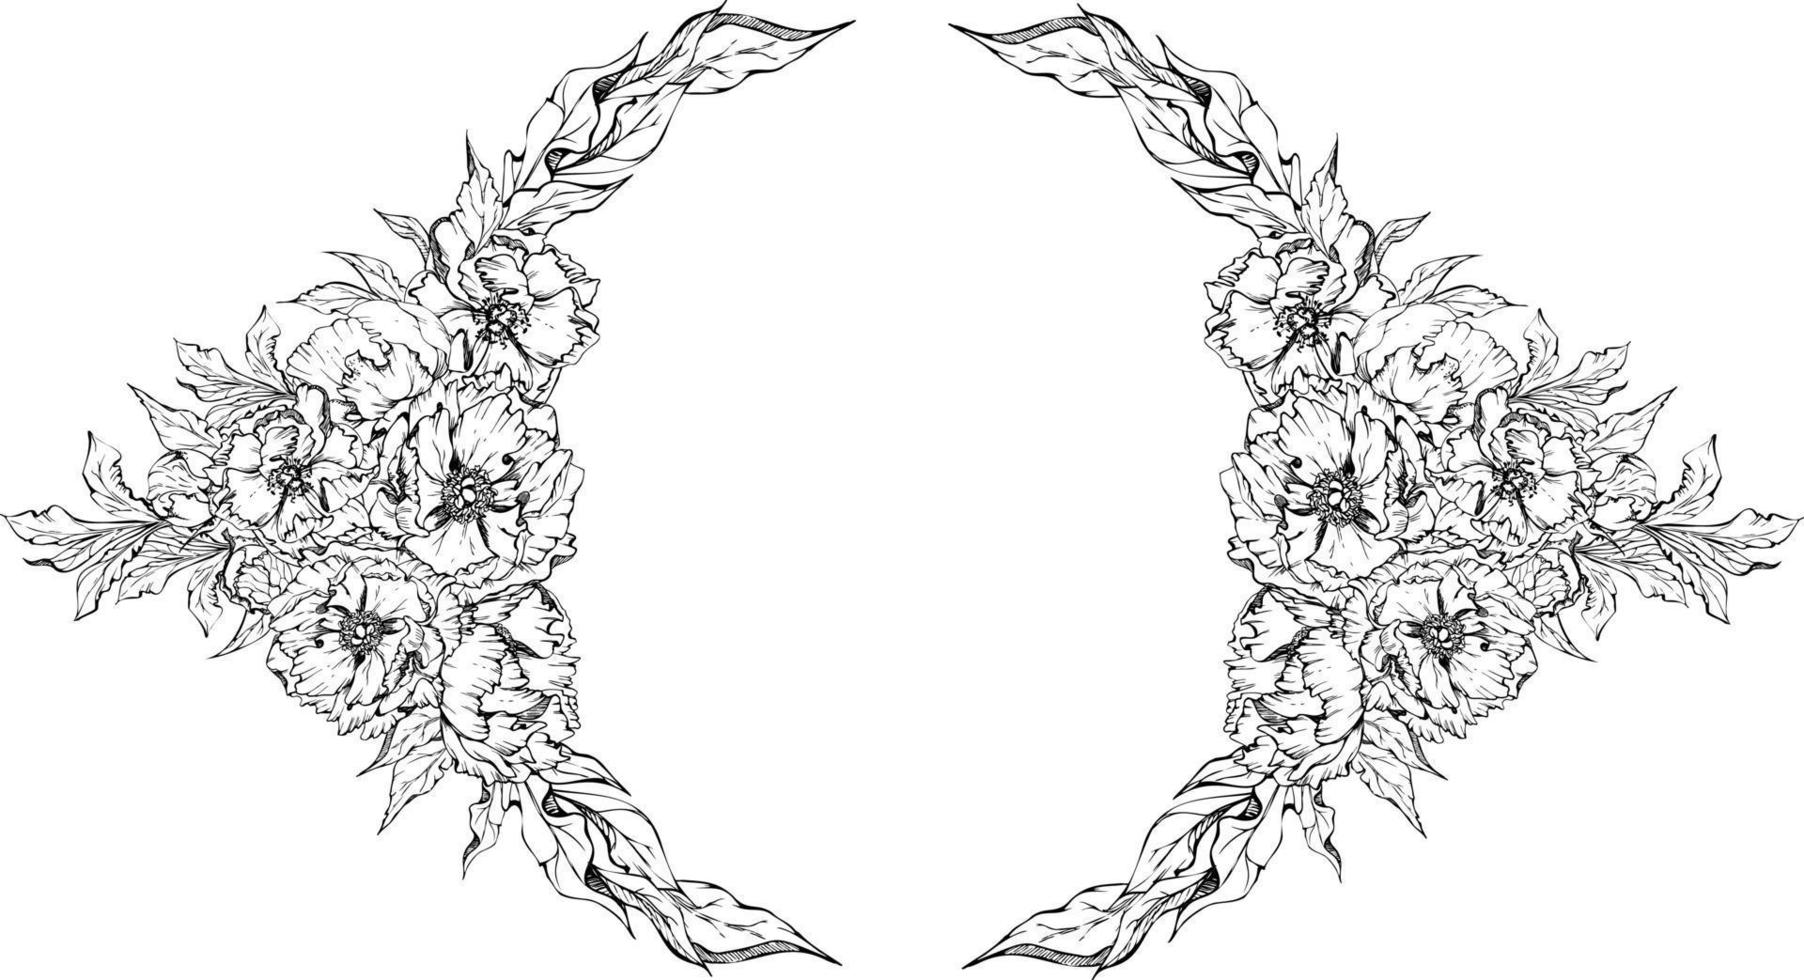 handgezeichnete Vektorkreisrahmen-Kranzanordnung mit Pfingstrosenblumen, -knospen und -blättern. isoliert auf weißem Hintergrund. design für einladungen, hochzeits- oder grußkarten, tapeten, druck, textil vektor